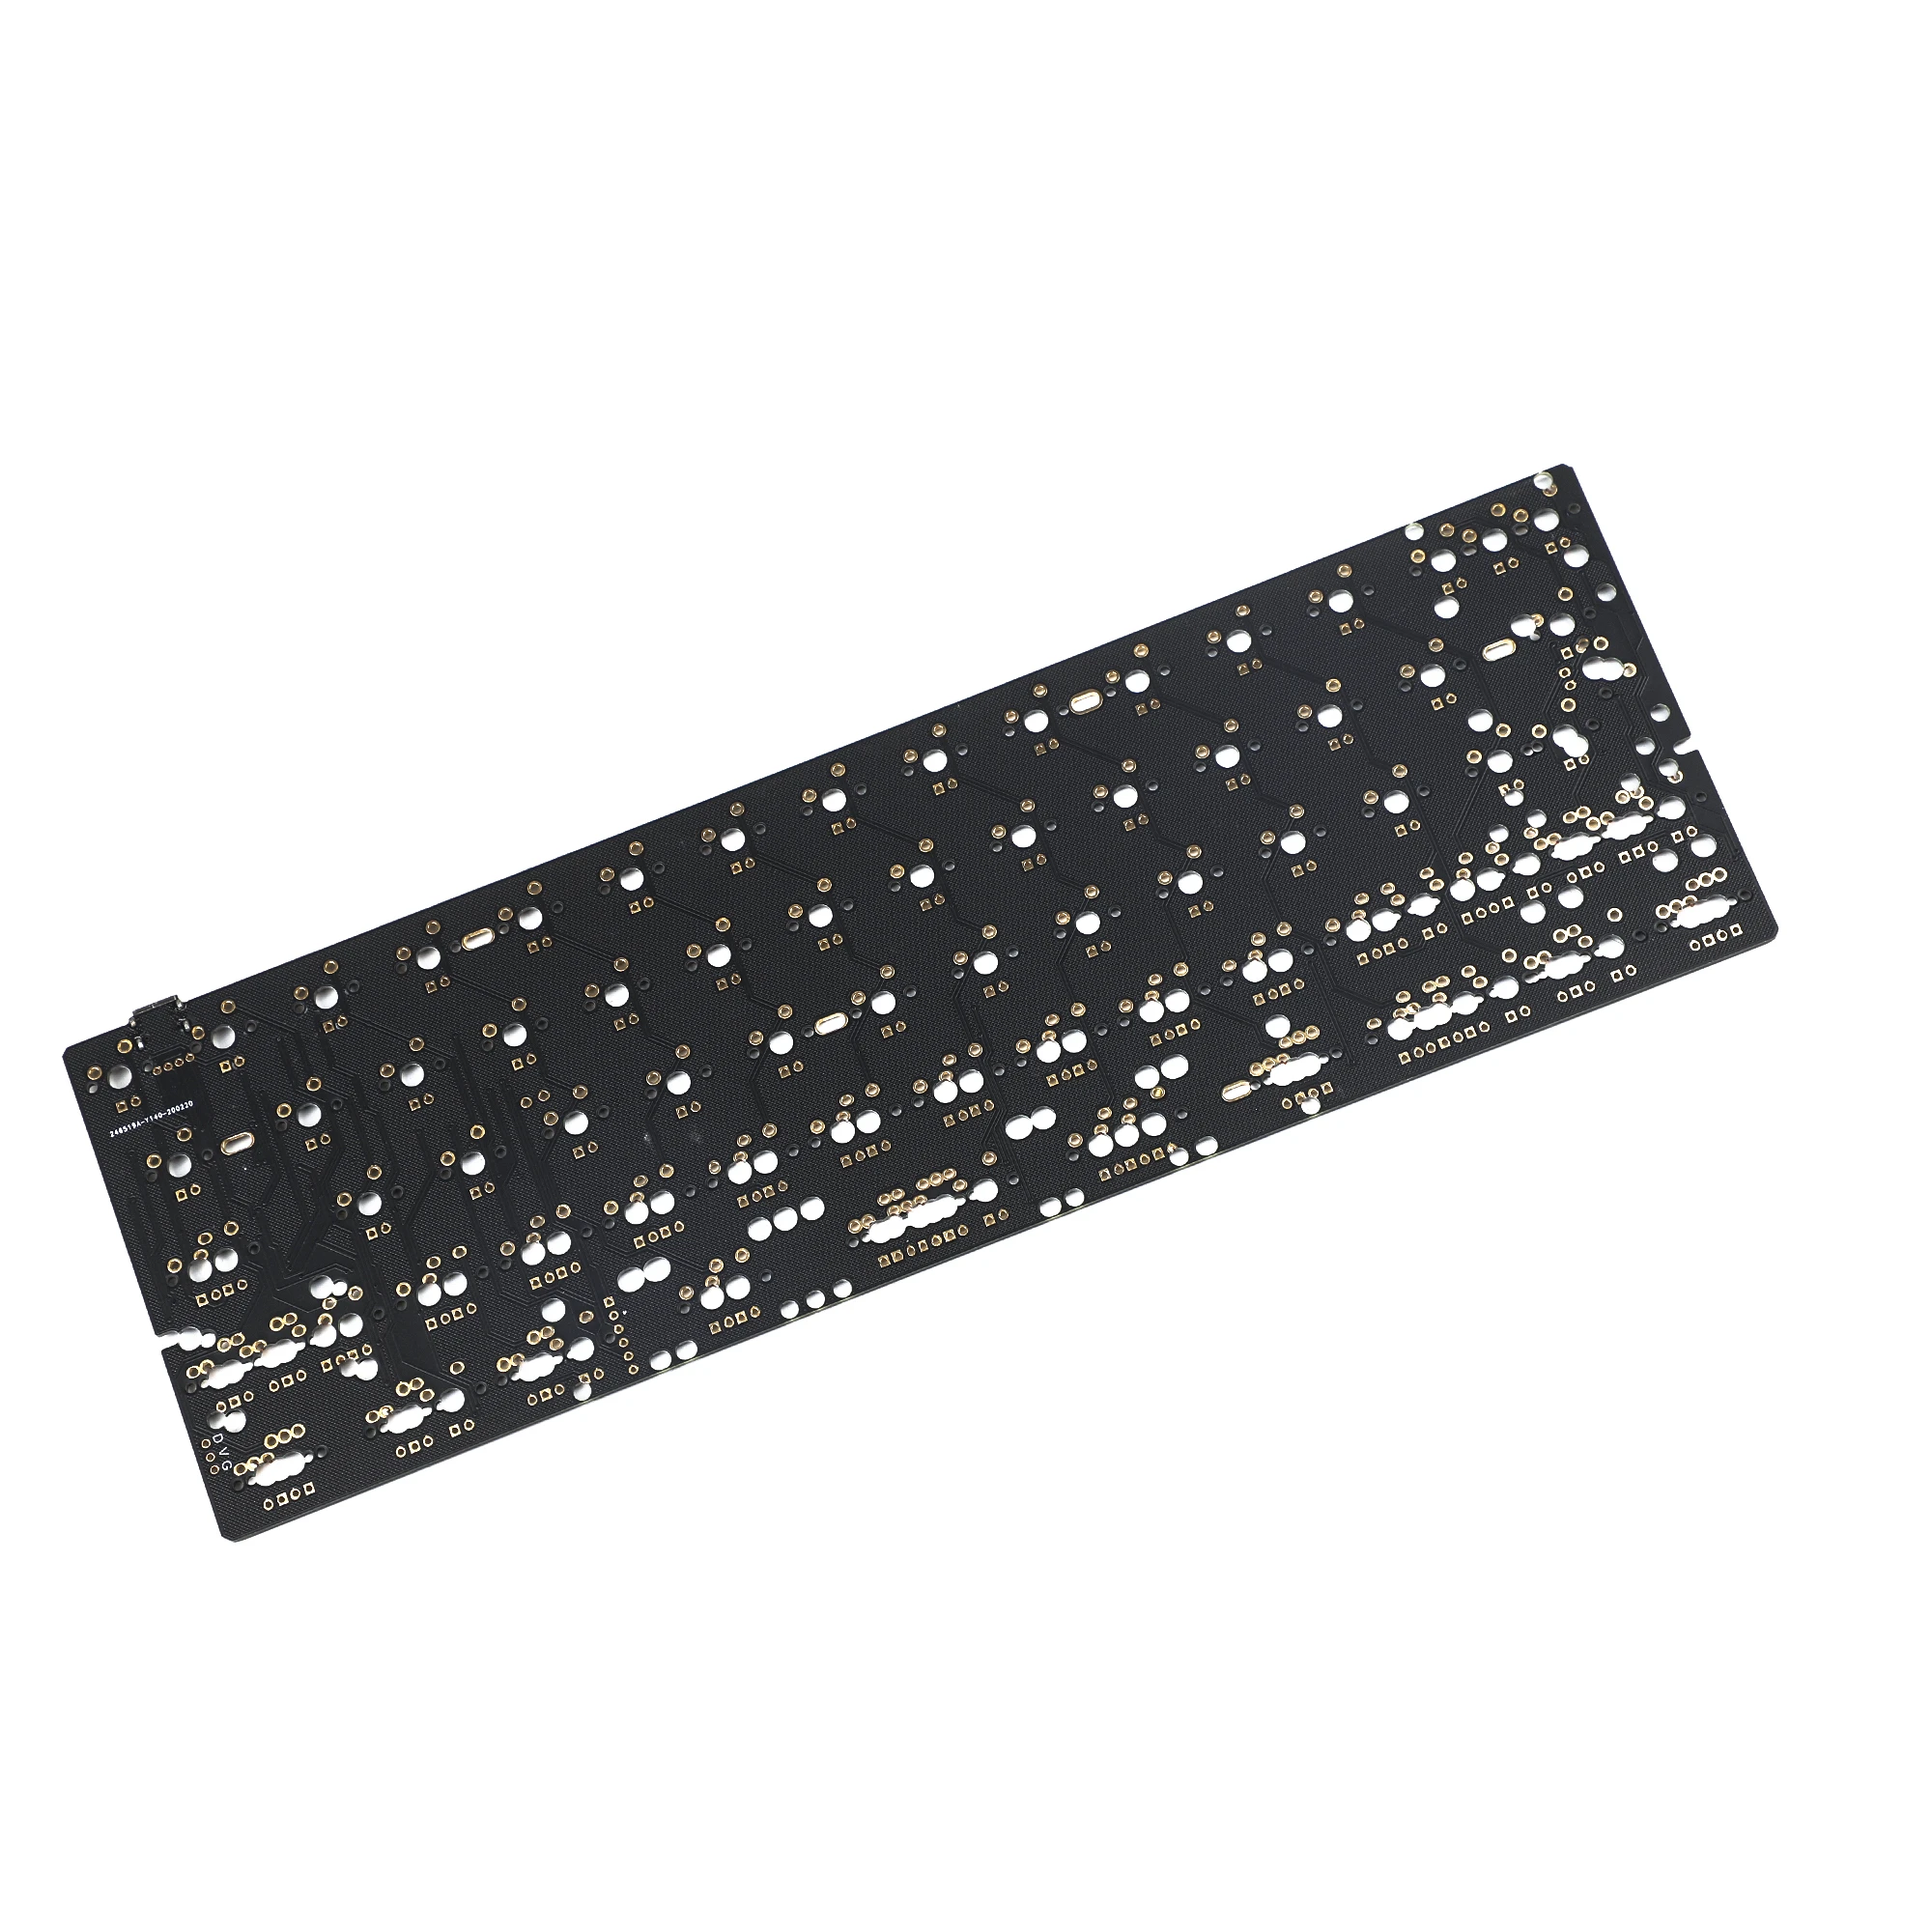 GH60 64 Minila QMK VIA PCB Fully Programmable For DIY Mechanical Keyboard YD60MQ YD64MQ Poker HHKB Support LED